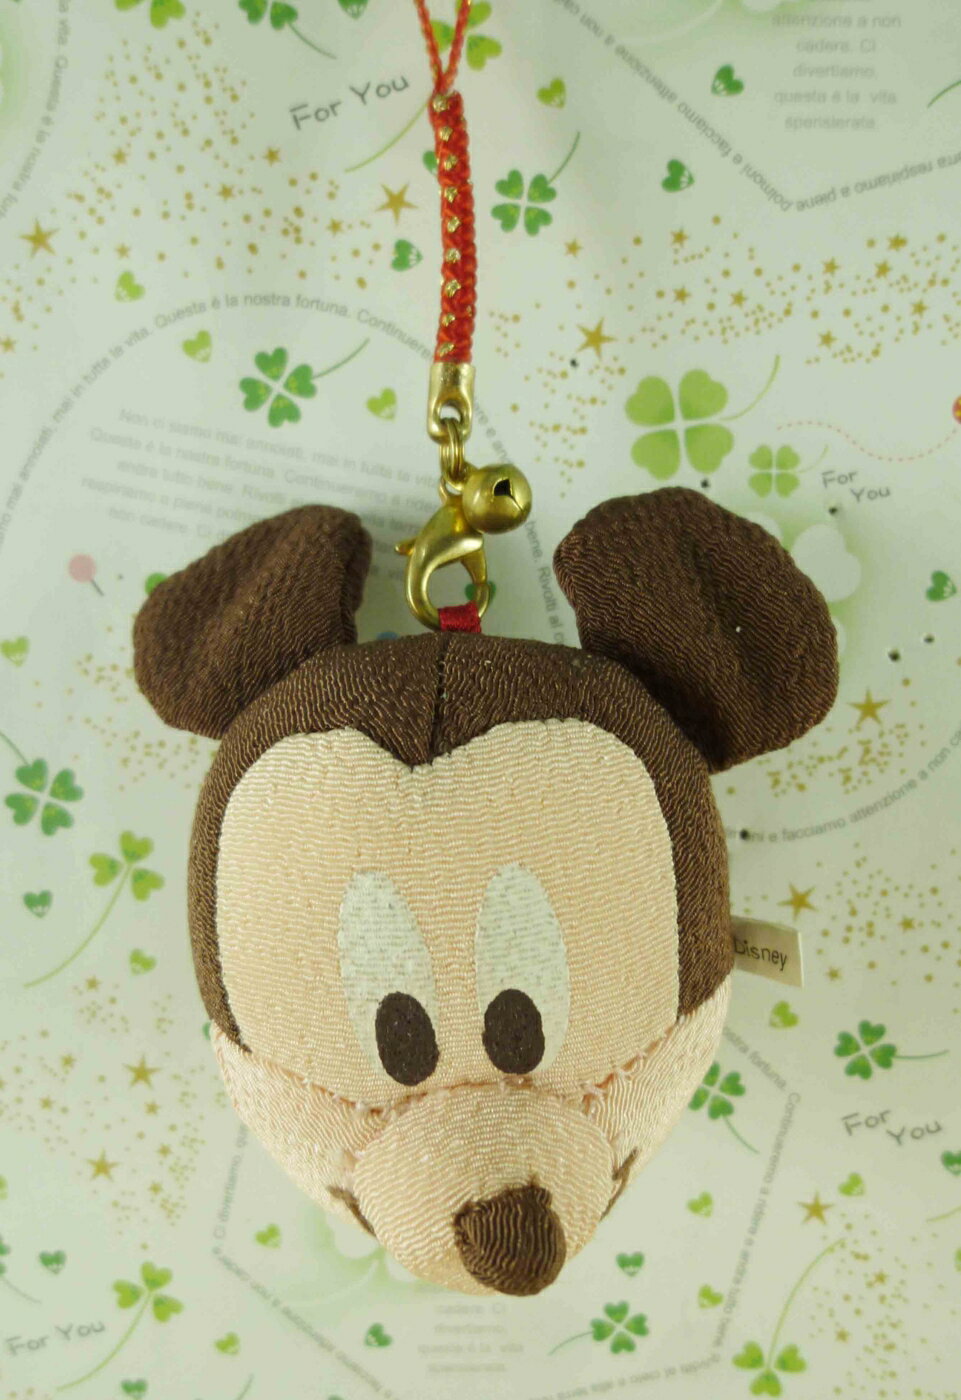 【震撼精品百貨】Micky Mouse 米奇/米妮 吊飾-大頭娃娃 震撼日式精品百貨